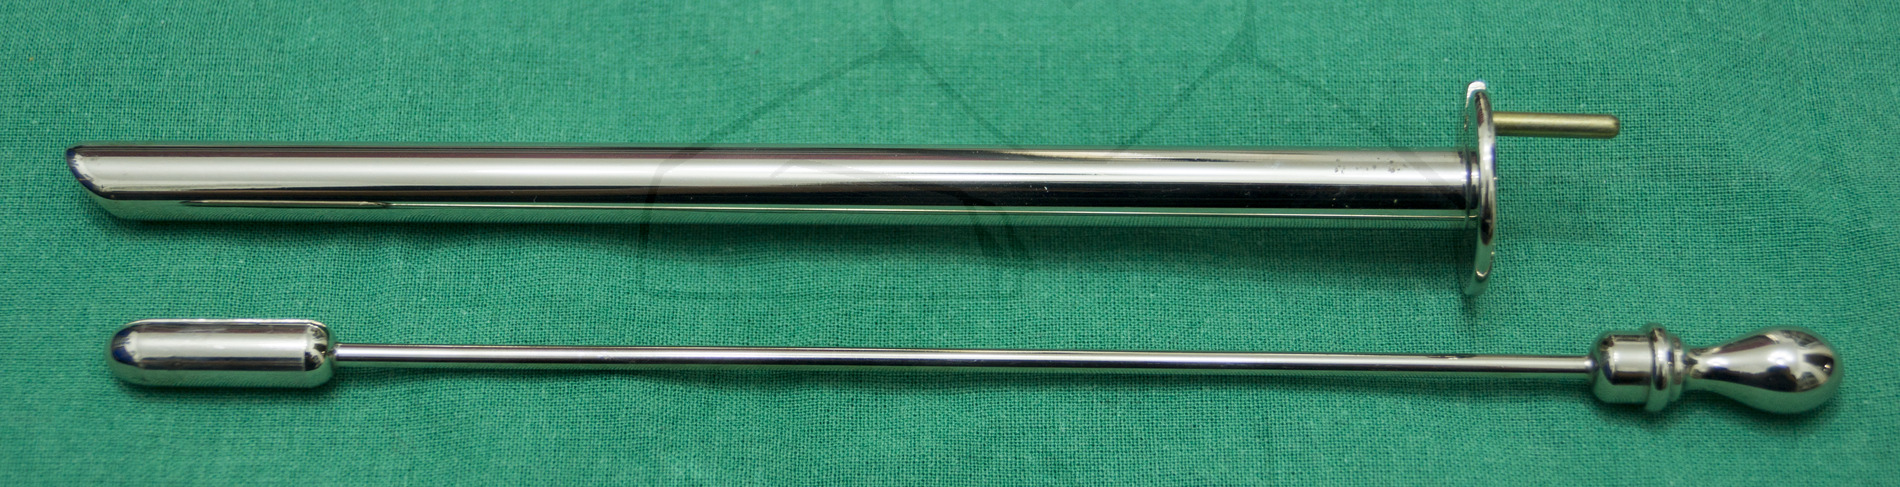 Laryngoskop - Laryngoskop der Größe 25 mit dem herausgezogenen Einsatz zum Einführen